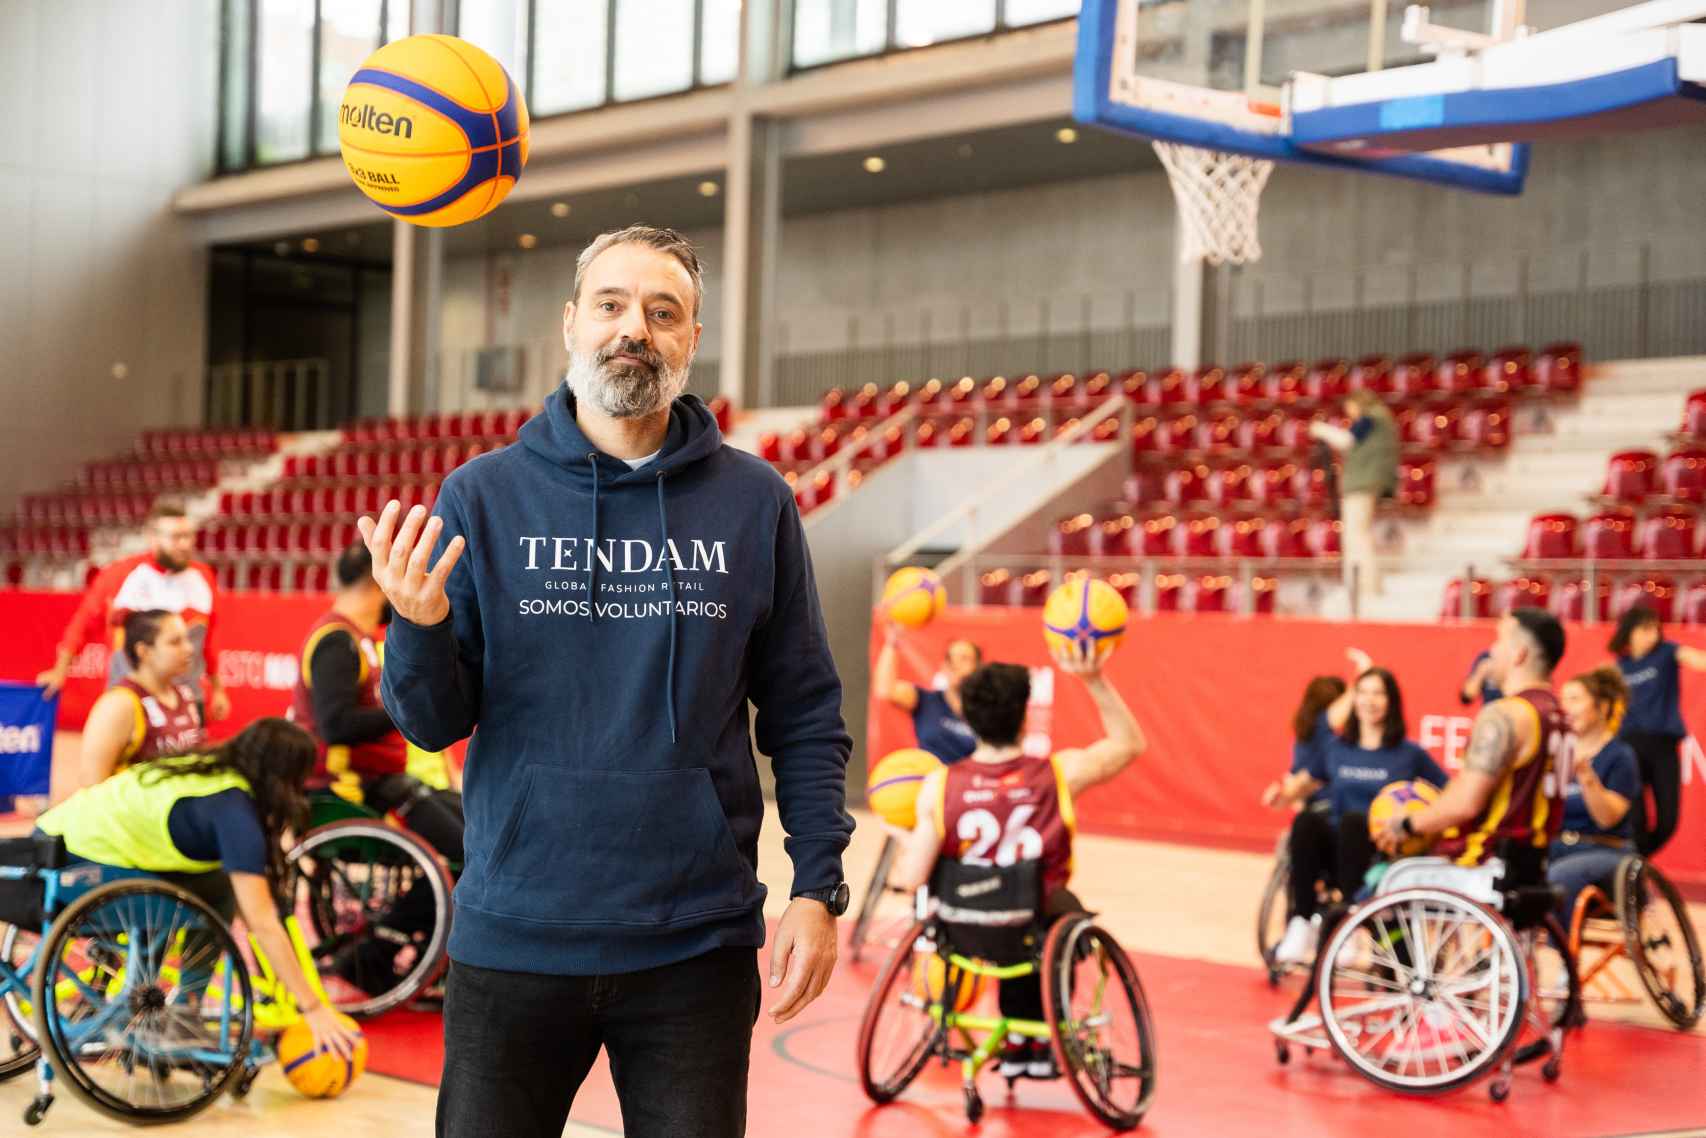 Marcos del Olmo, product manager de Tendam, durante el partido inclusivo de baloncesto 3x3 en silla de ruedas.